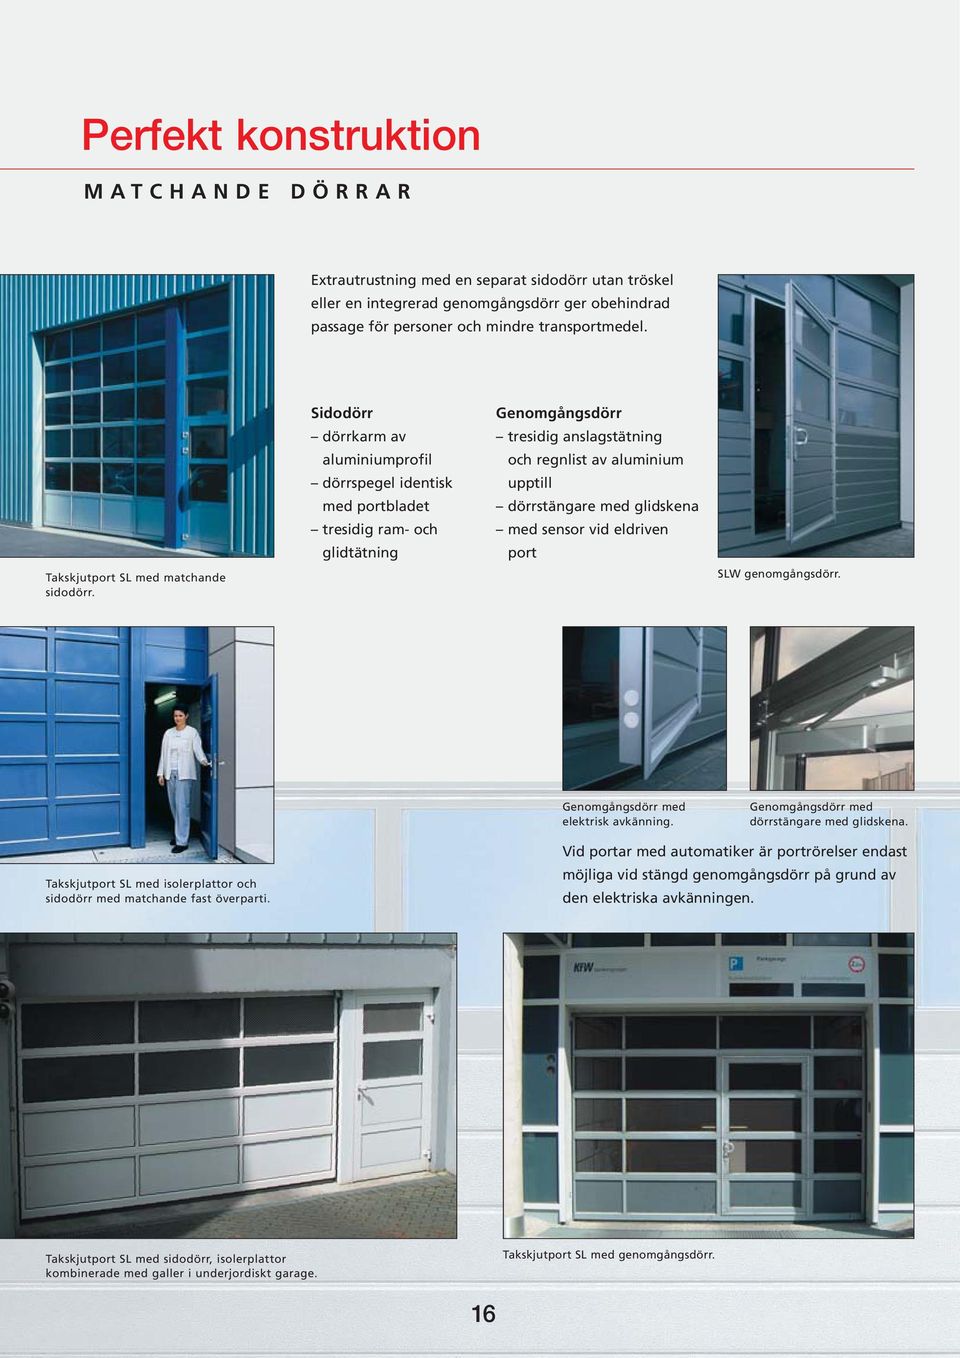 Sidodörr dörrkarm av aluminiumprofil dörrspegel identisk med portbladet tresidig ram- och glidtätning Genomgångsdörr tresidig anslagstätning och regnlist av aluminium upptill dörrstängare med